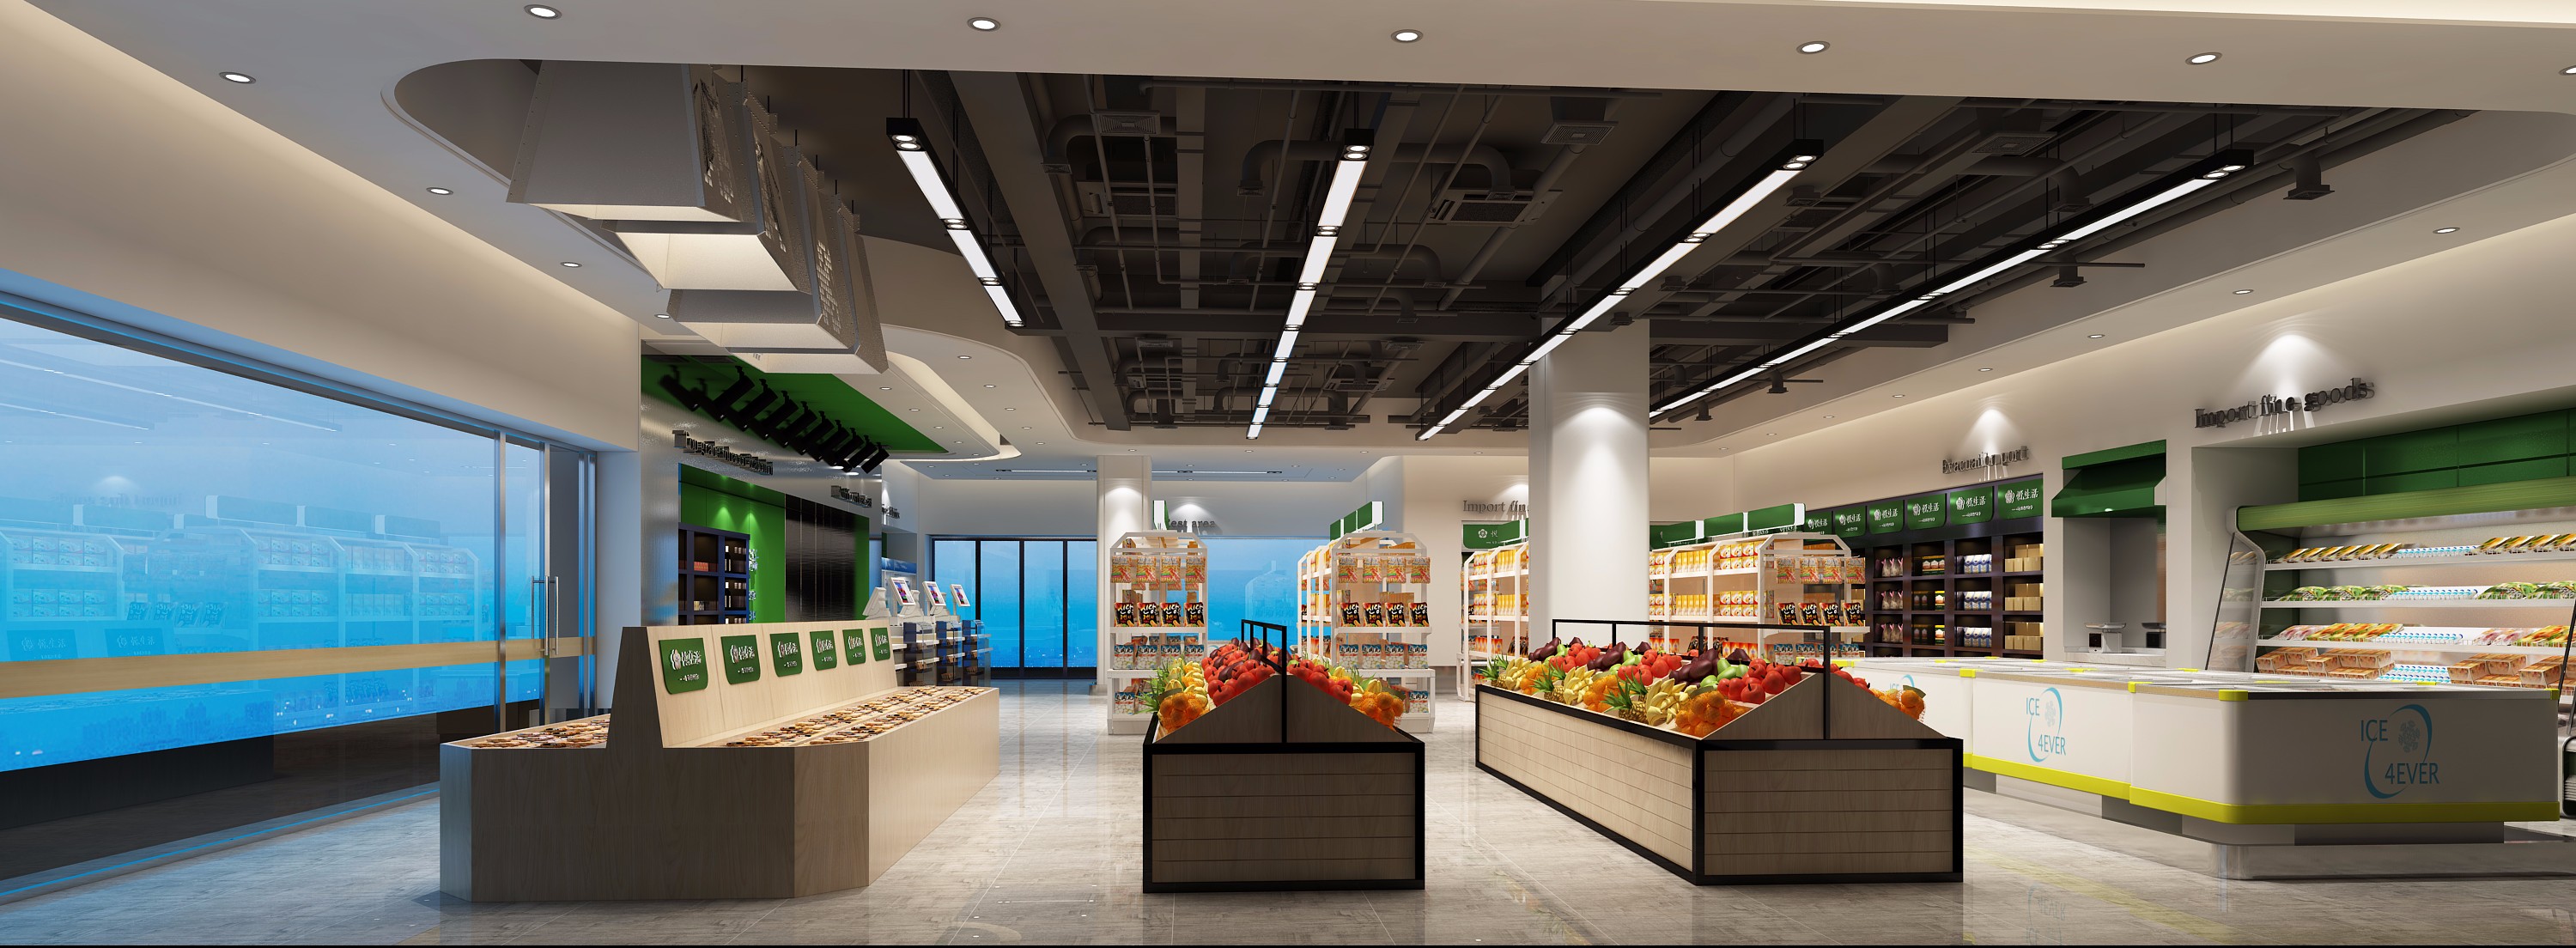 超市设计如何吸引提升客流量?-媒体资讯-深圳汉萨康托商业空间设计公司